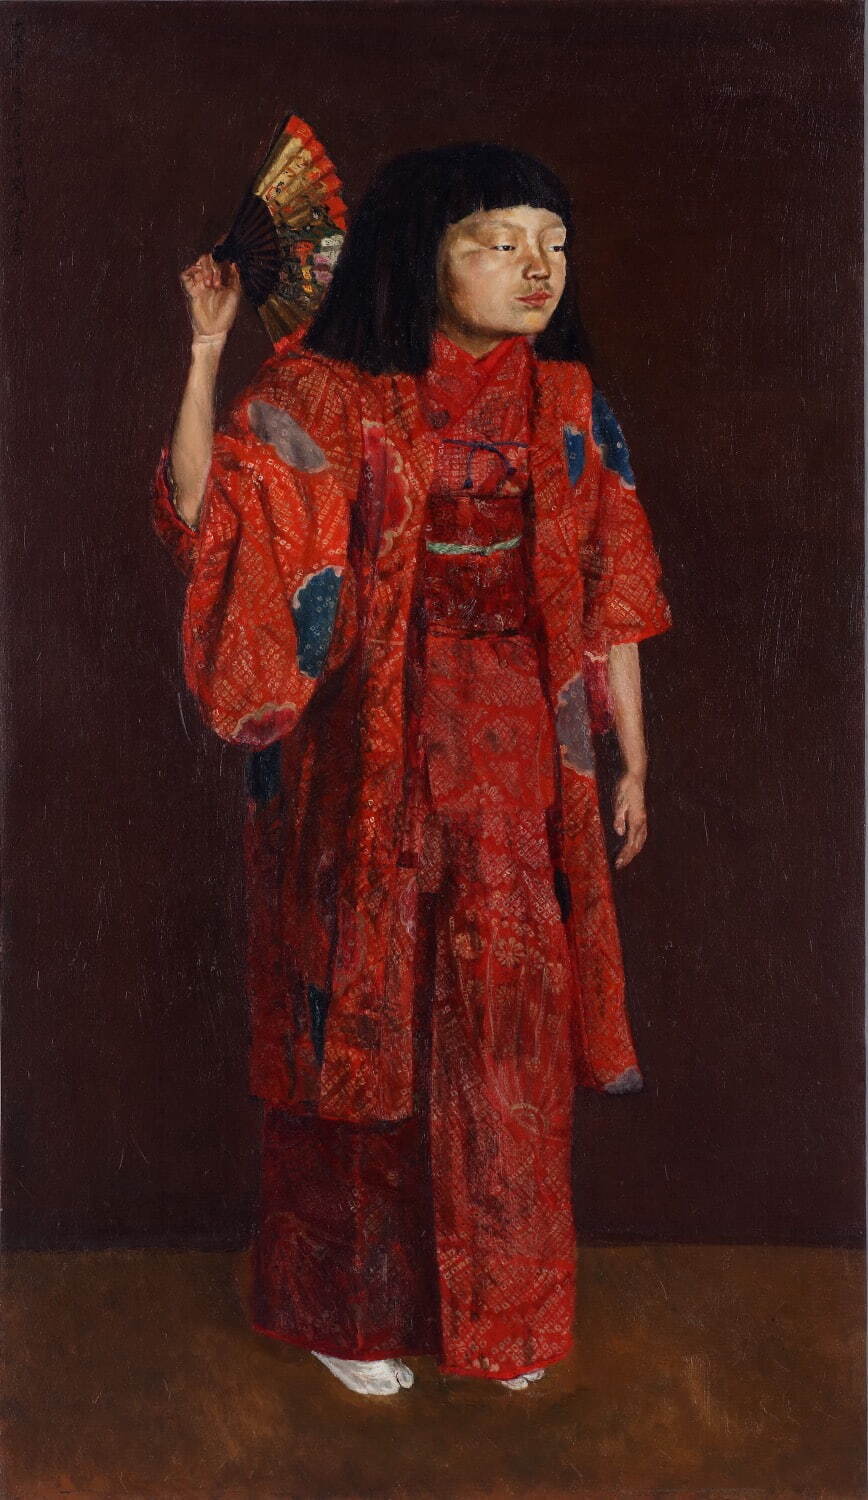 岸田劉生 《童女舞姿》 1924年
油彩、画布 大原美術館蔵